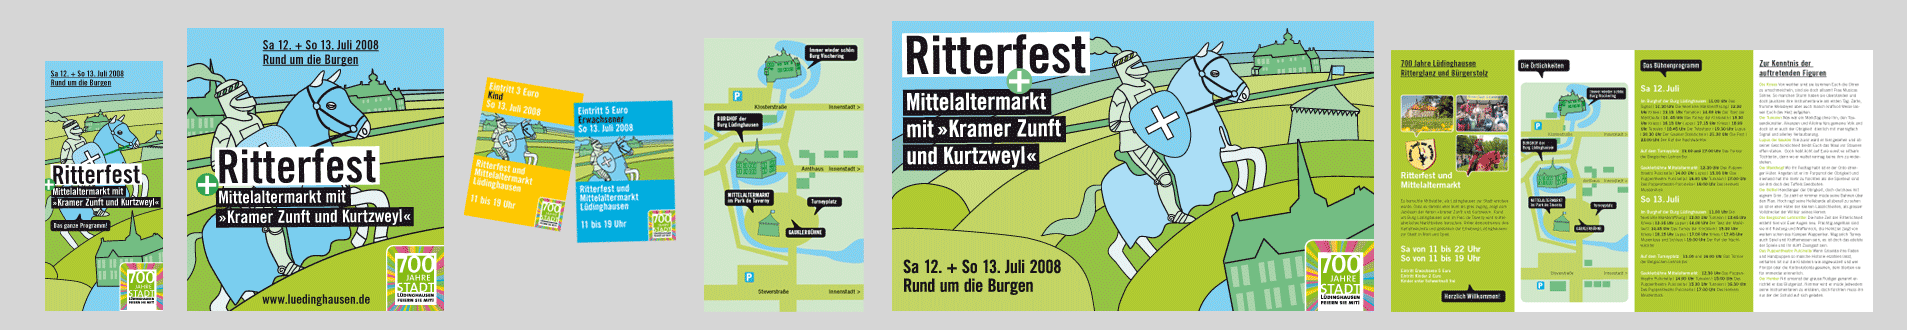 Stadt Lüdinghausen > Plakat, Faltblatt etc. / Ritterfest